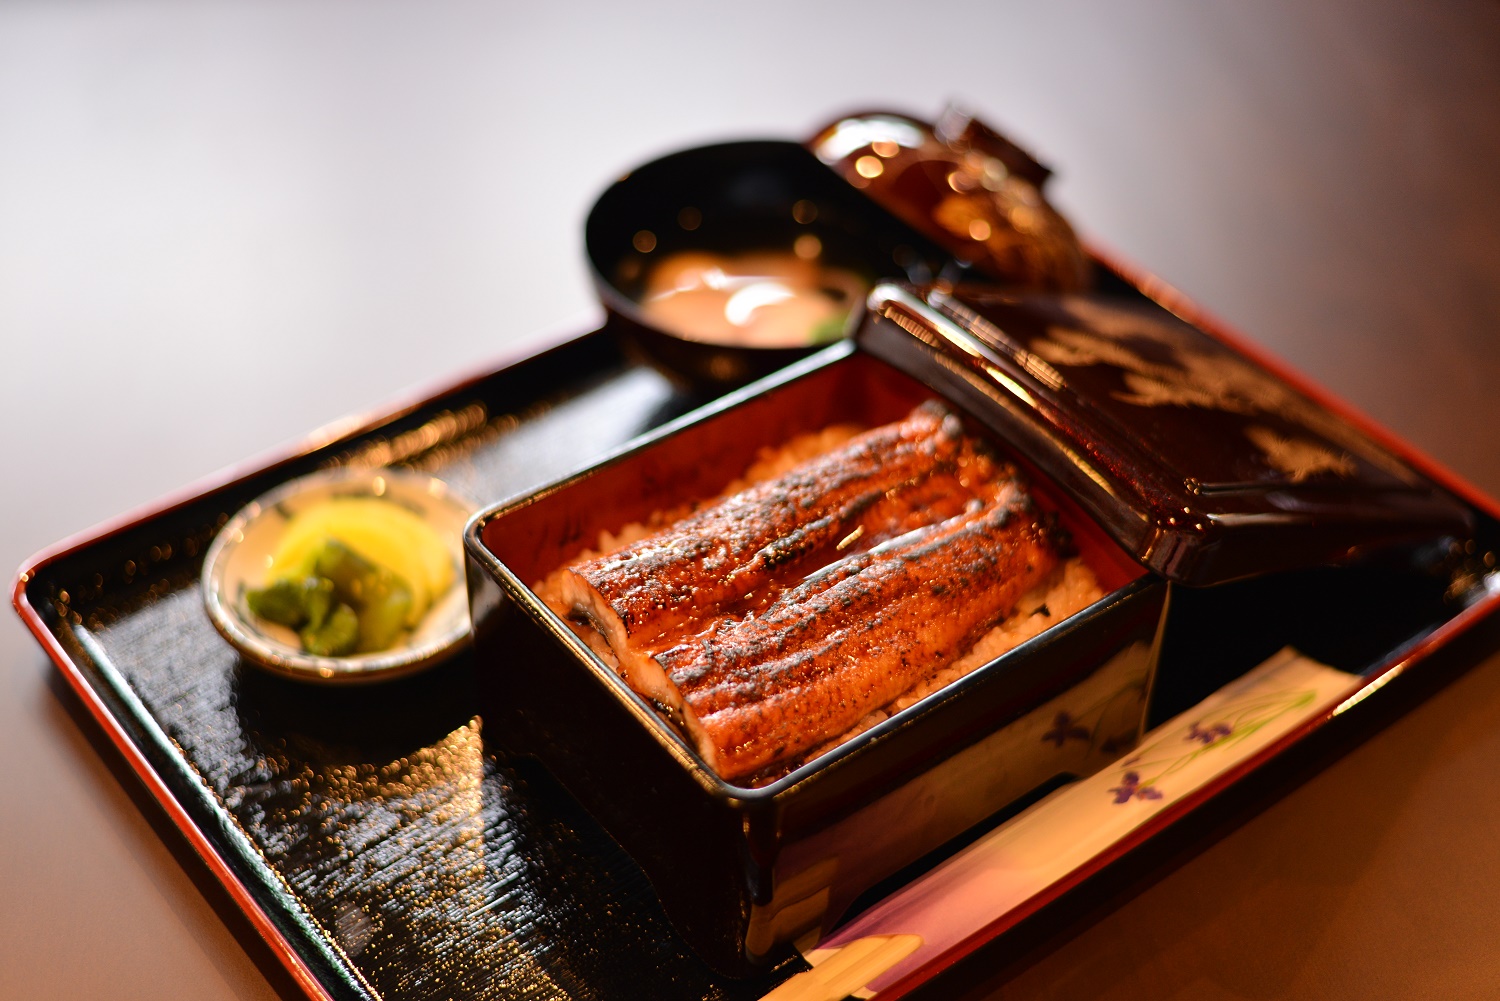 Unagi or eel is summer food and is said to keep you cool!